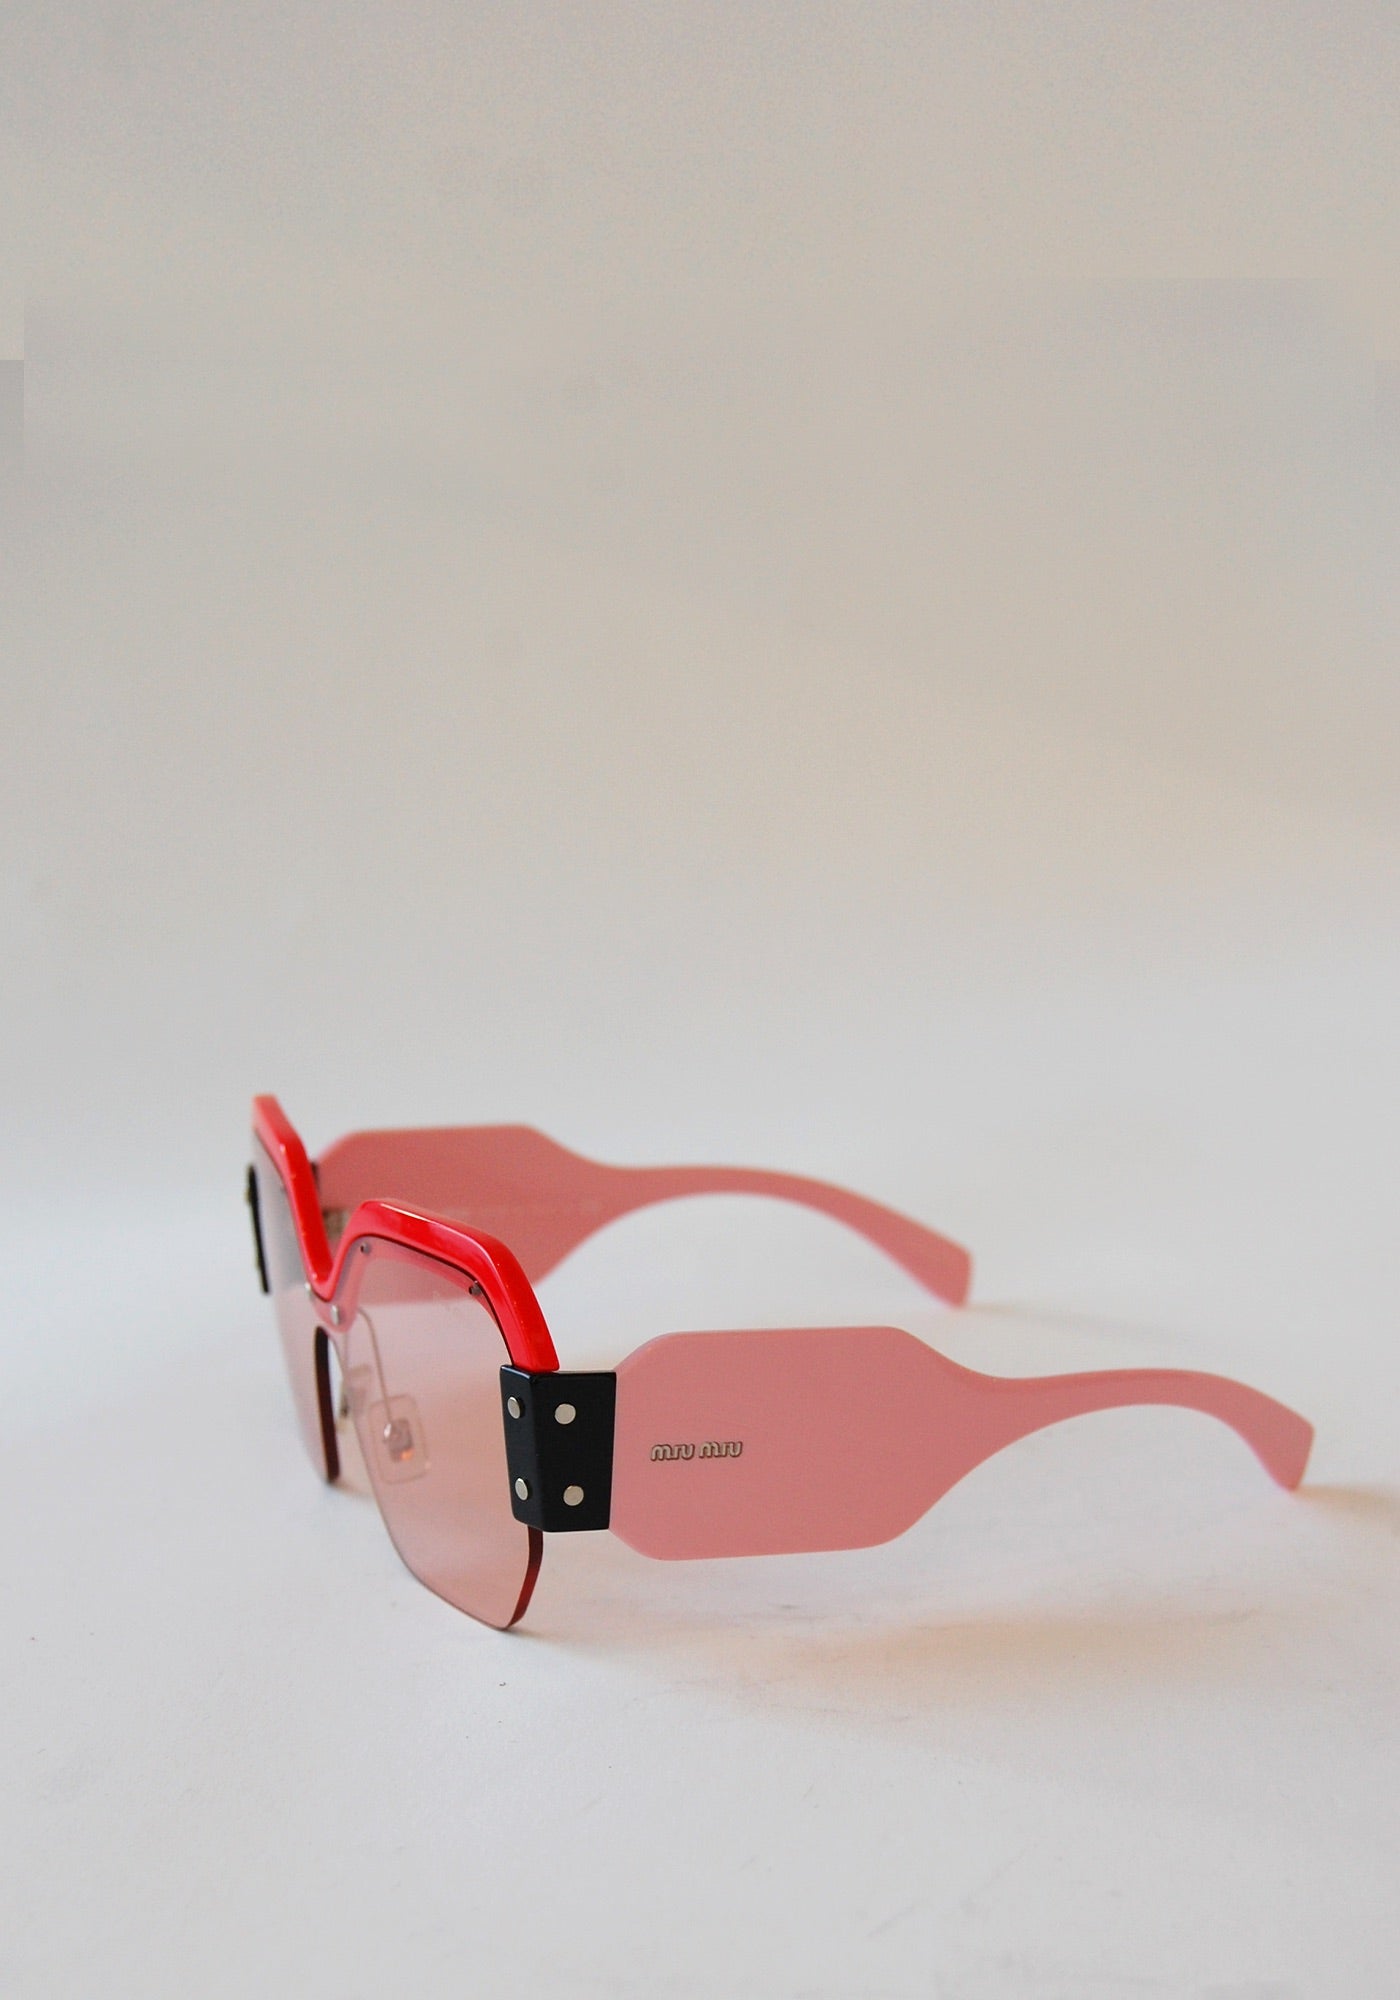 Miu Miu Red Pink Sunglasses